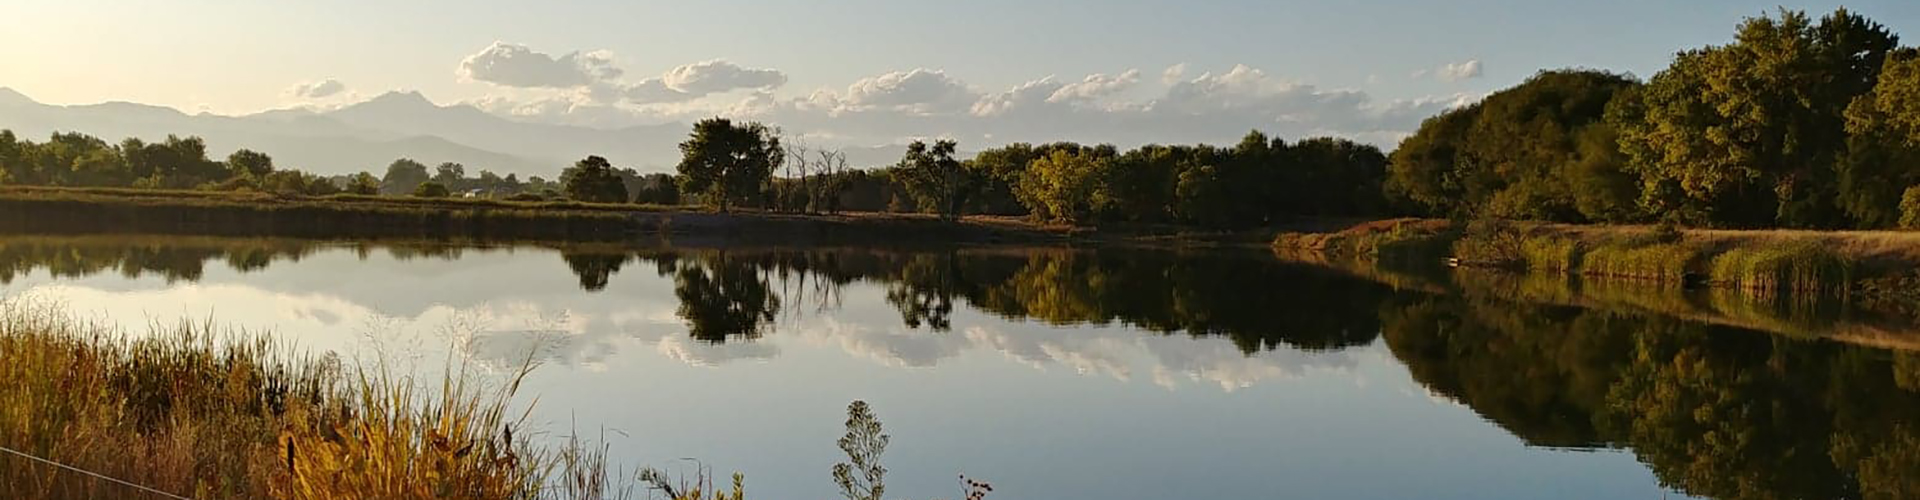 landscape shot at Golden Ponds